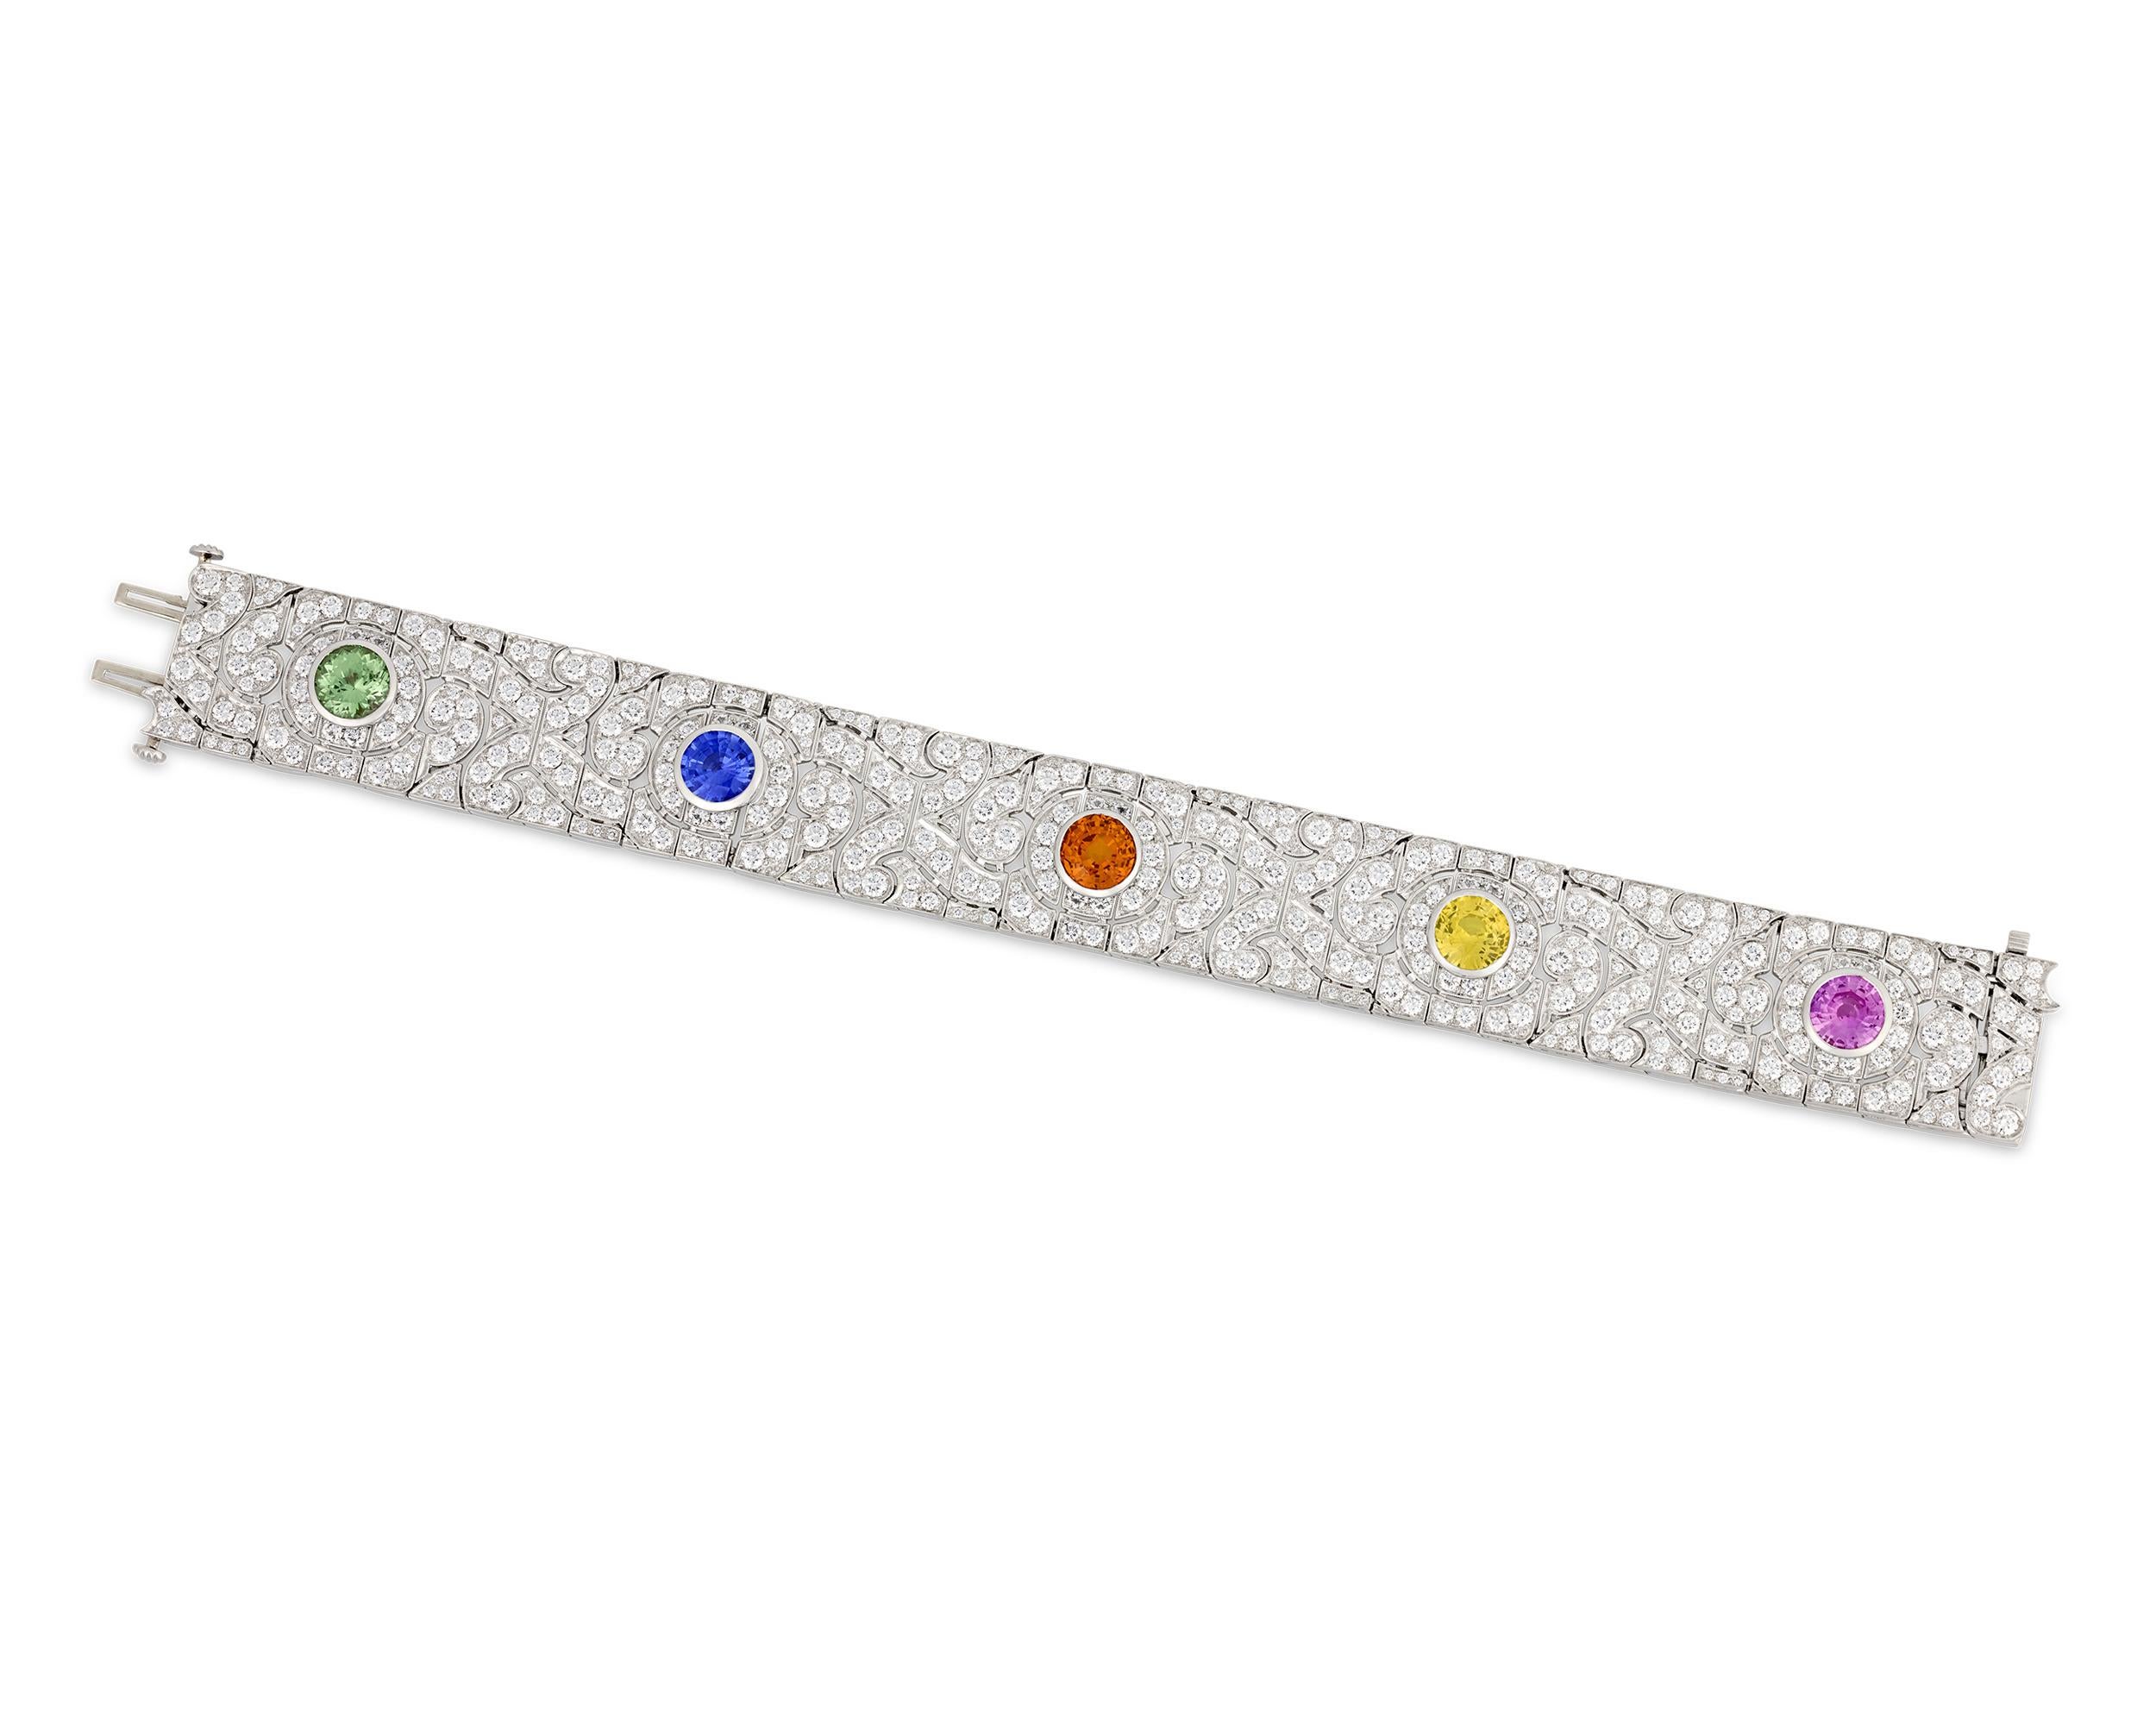 Dieses exquisite Armband des gefeierten Schmuckdesigners Oscar Heyman zeigt einen Regenbogen aus farbenfrohen Edelsteinen inmitten eines Meeres aus funkelnden weißen Diamanten. Das Design umfasst einen orangefarbenen Saphir von 2,71 Karat, einen